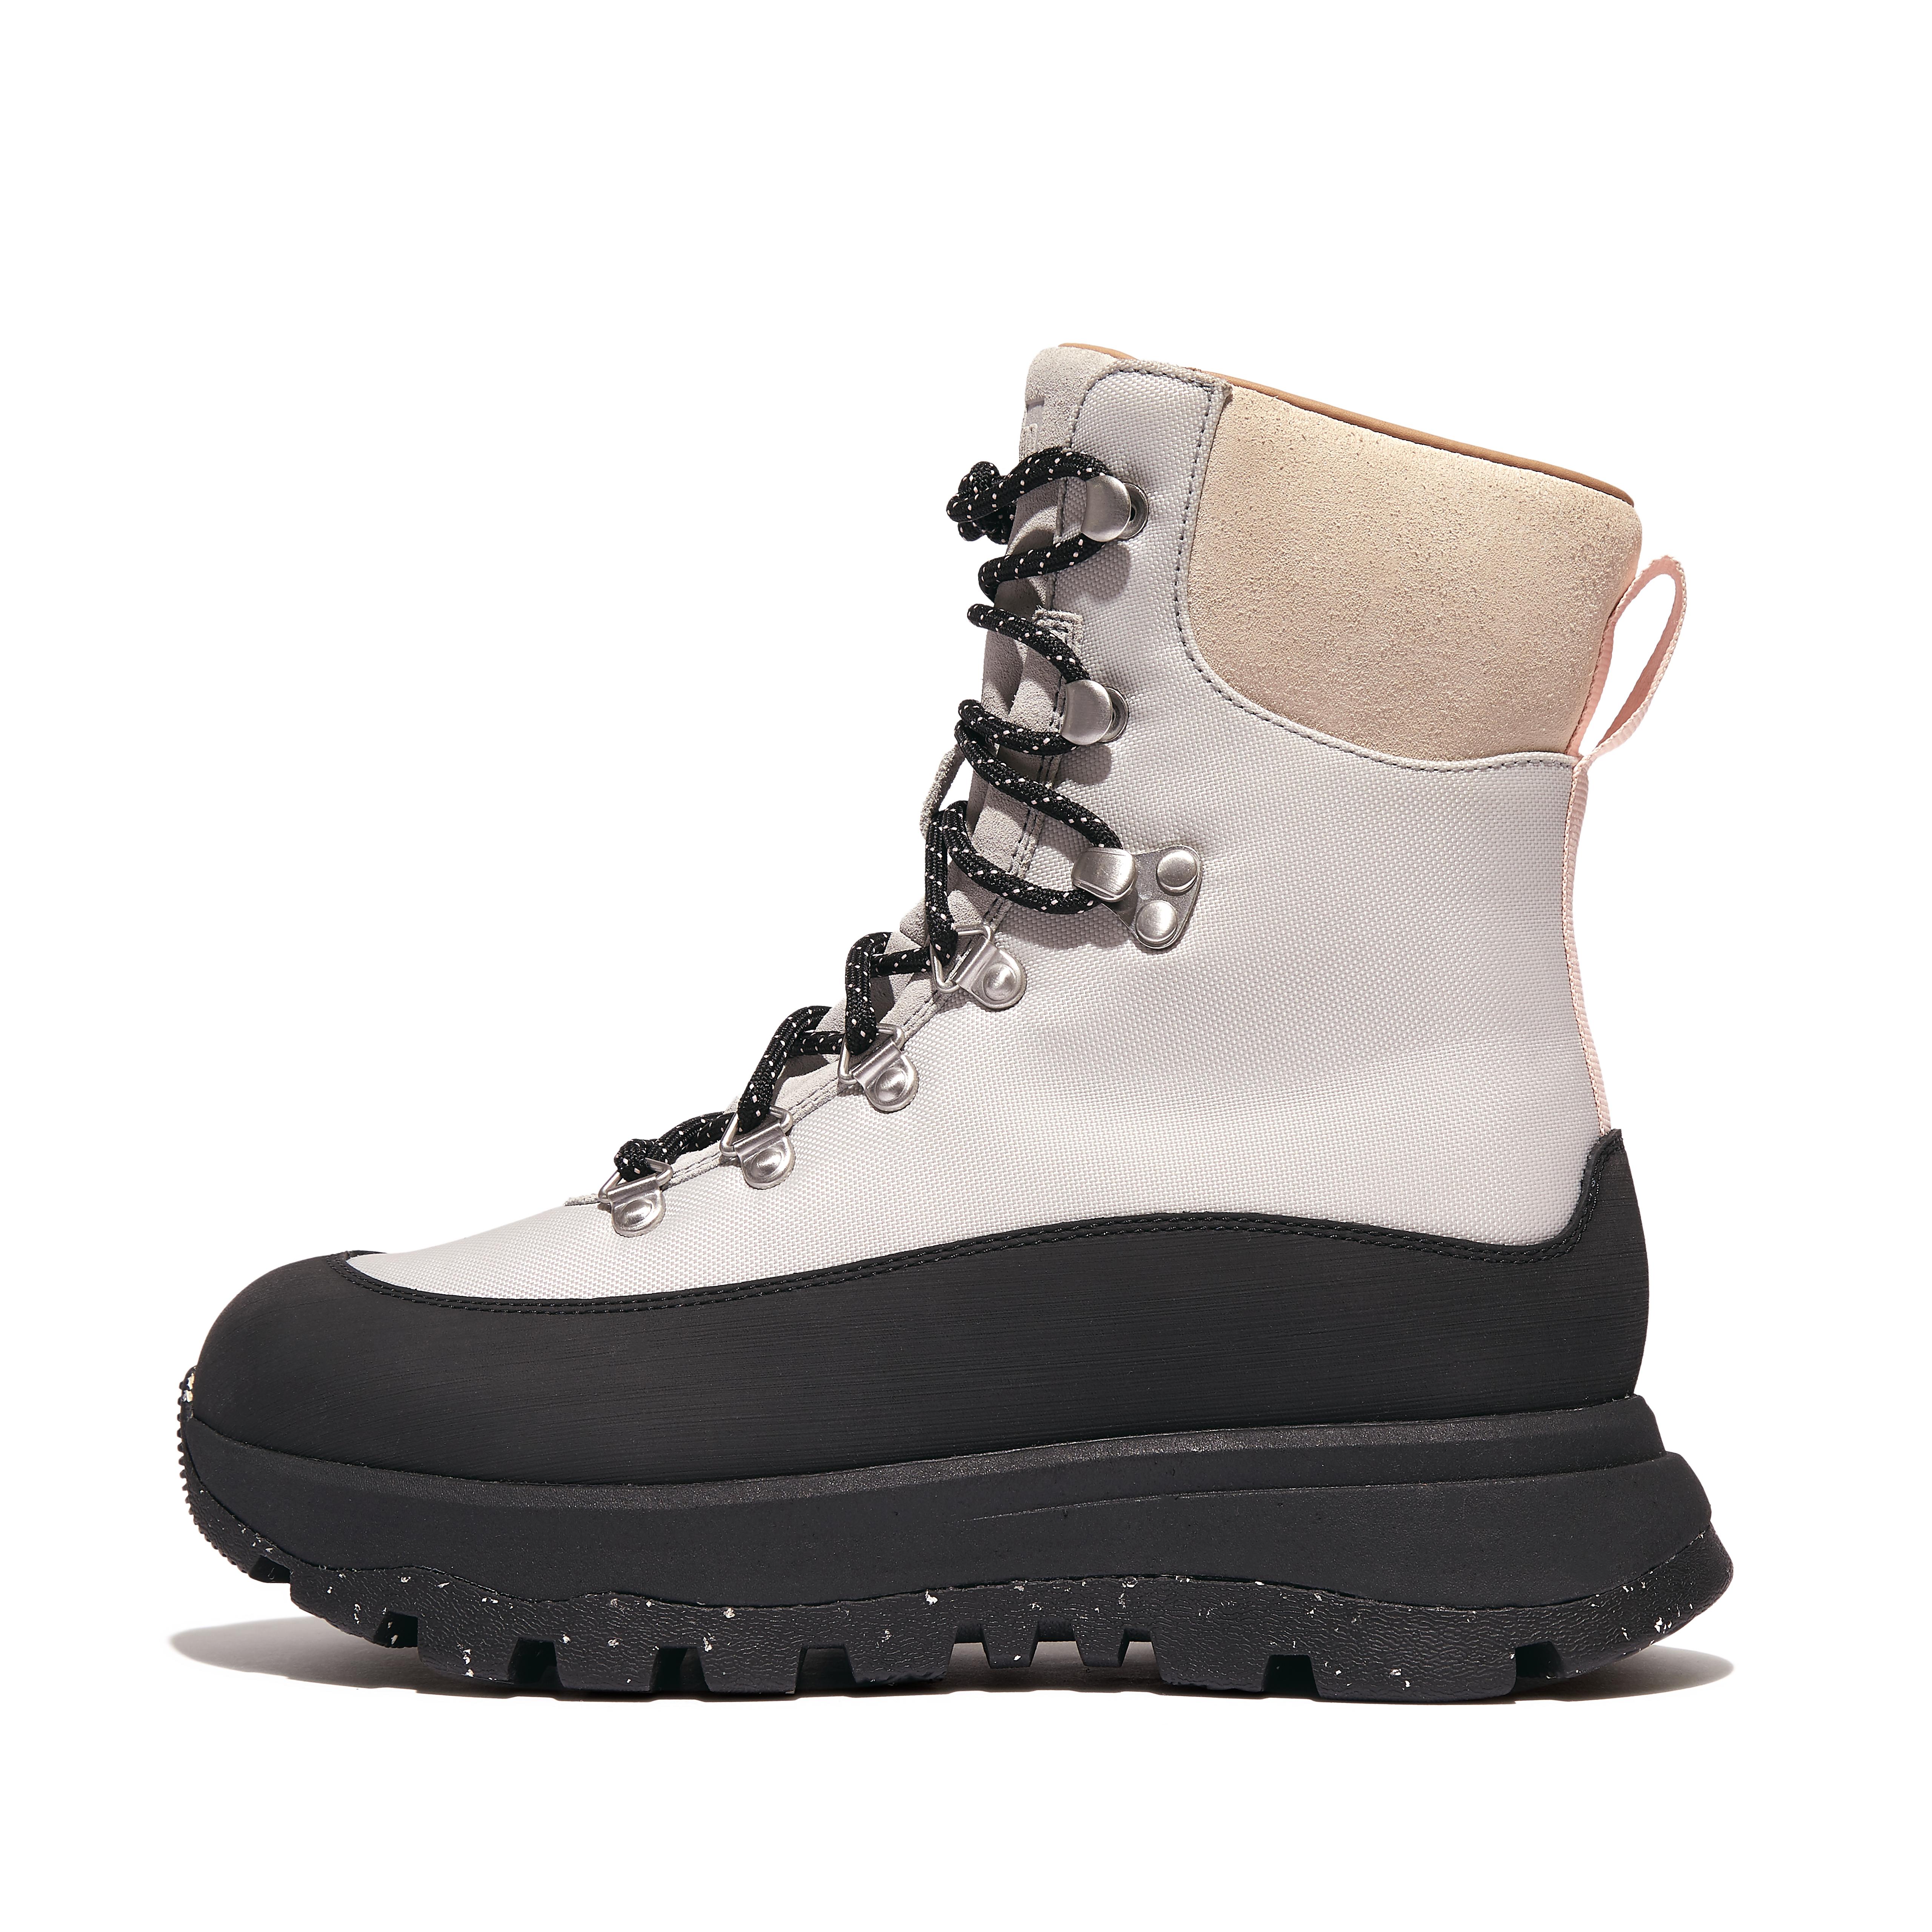 핏플랍 Fitflop Waterproof Fabric/Suede Walking Boots,Black Mix